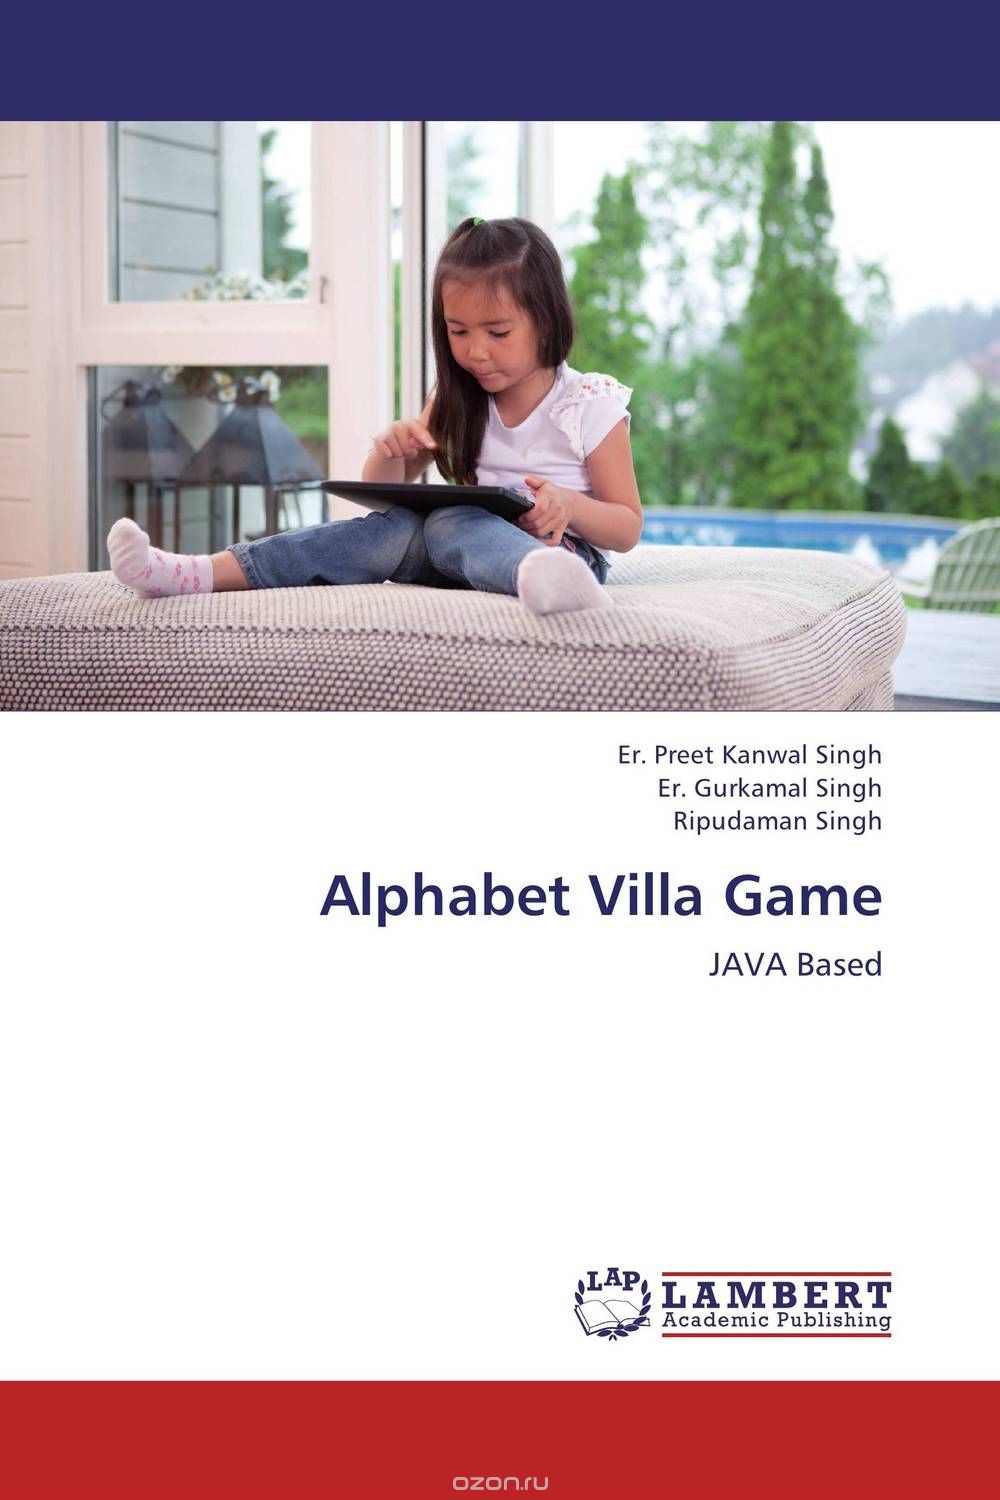 Скачать книгу "Alphabet Villa Game"